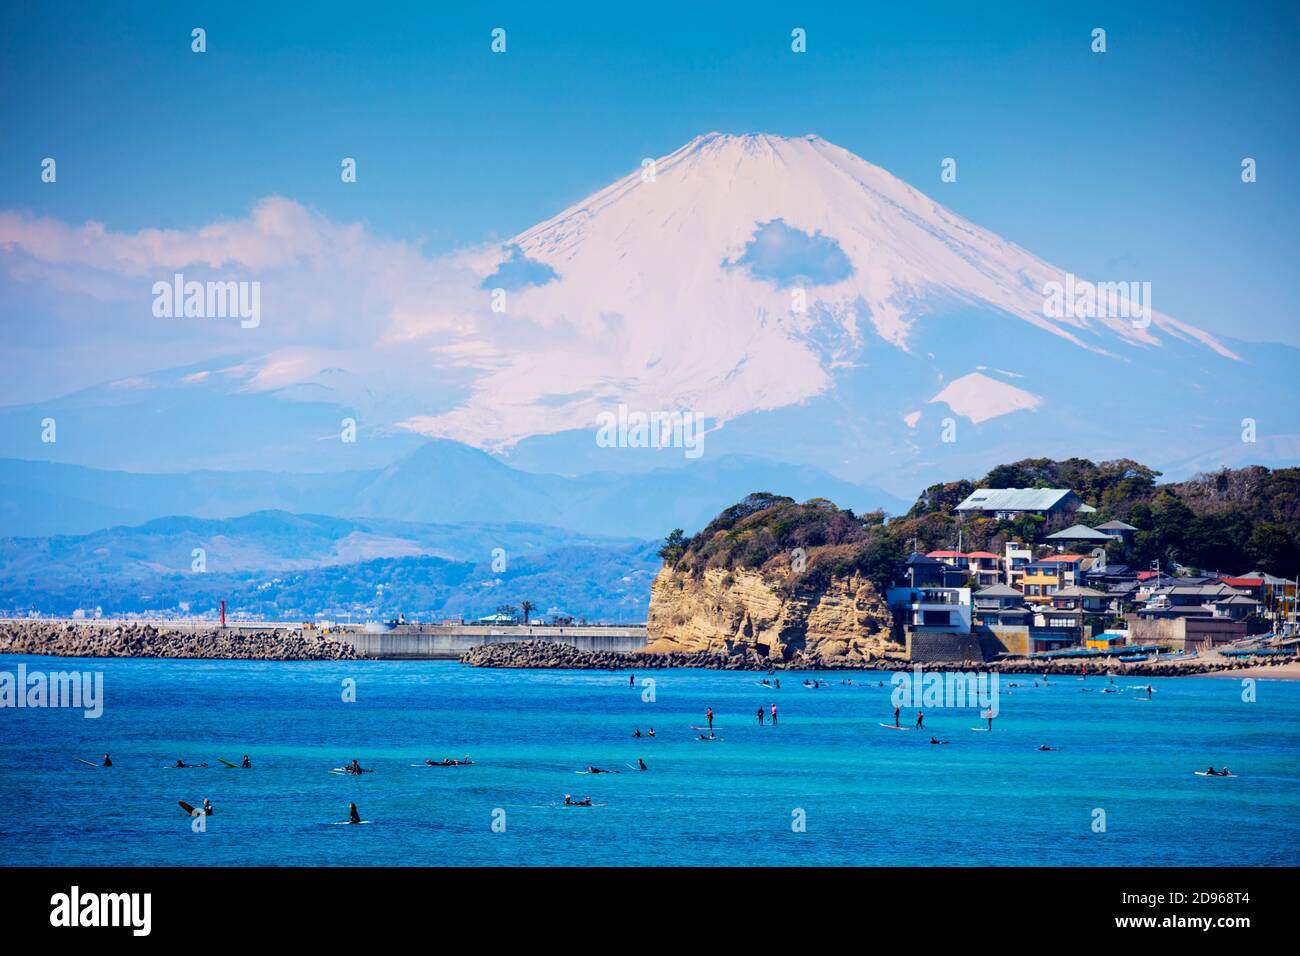 Asie, Japon, Honshu, préfecture de Kanagawa, surfeurs près du Mont Fuji (3776 m) Banque D'Images